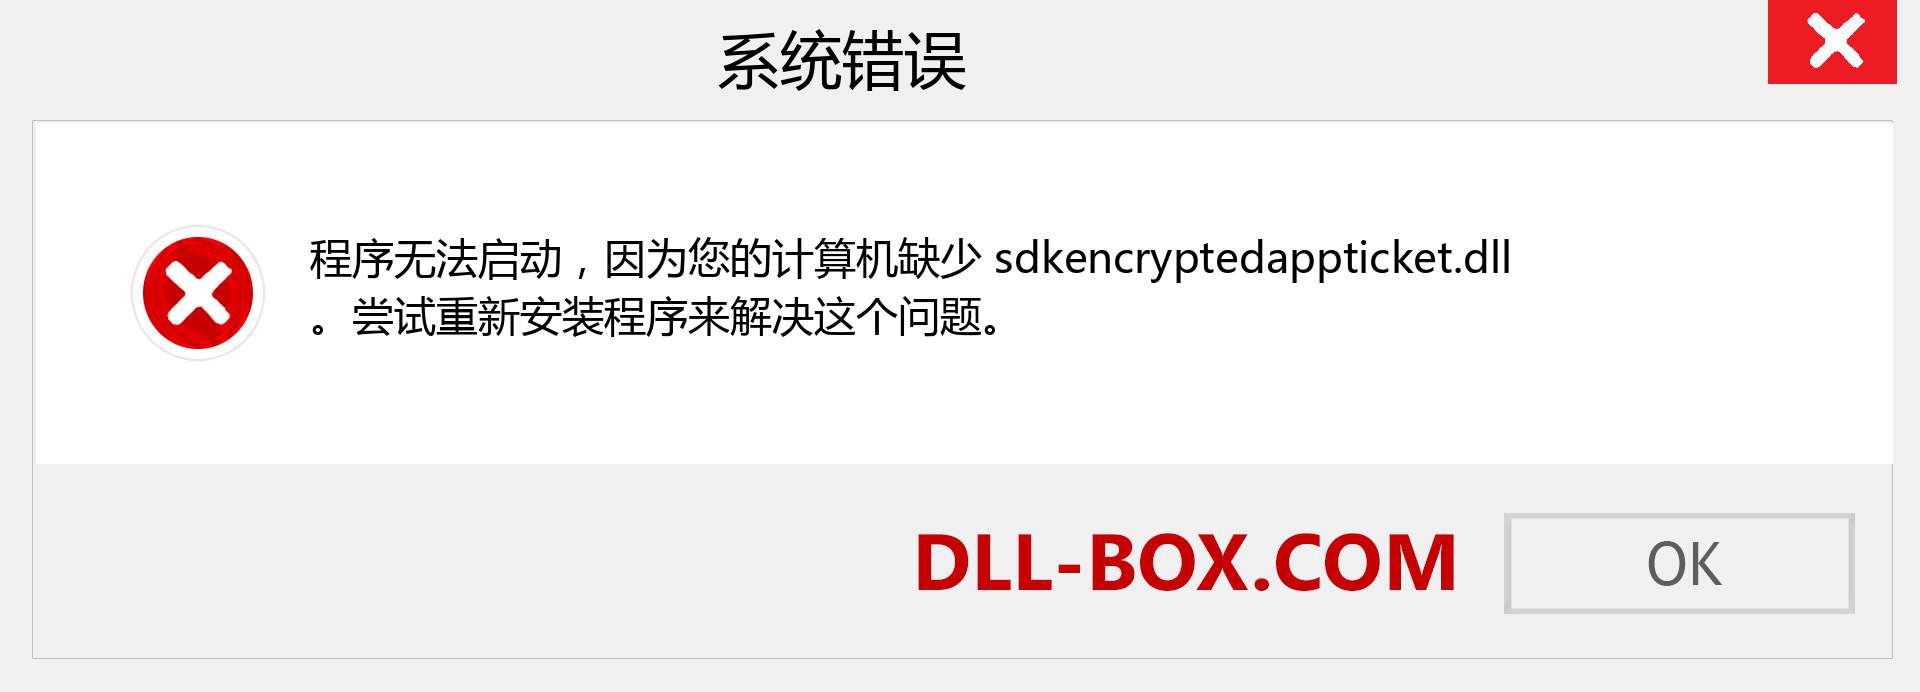 sdkencryptedappticket.dll 文件丢失？。 适用于 Windows 7、8、10 的下载 - 修复 Windows、照片、图像上的 sdkencryptedappticket dll 丢失错误